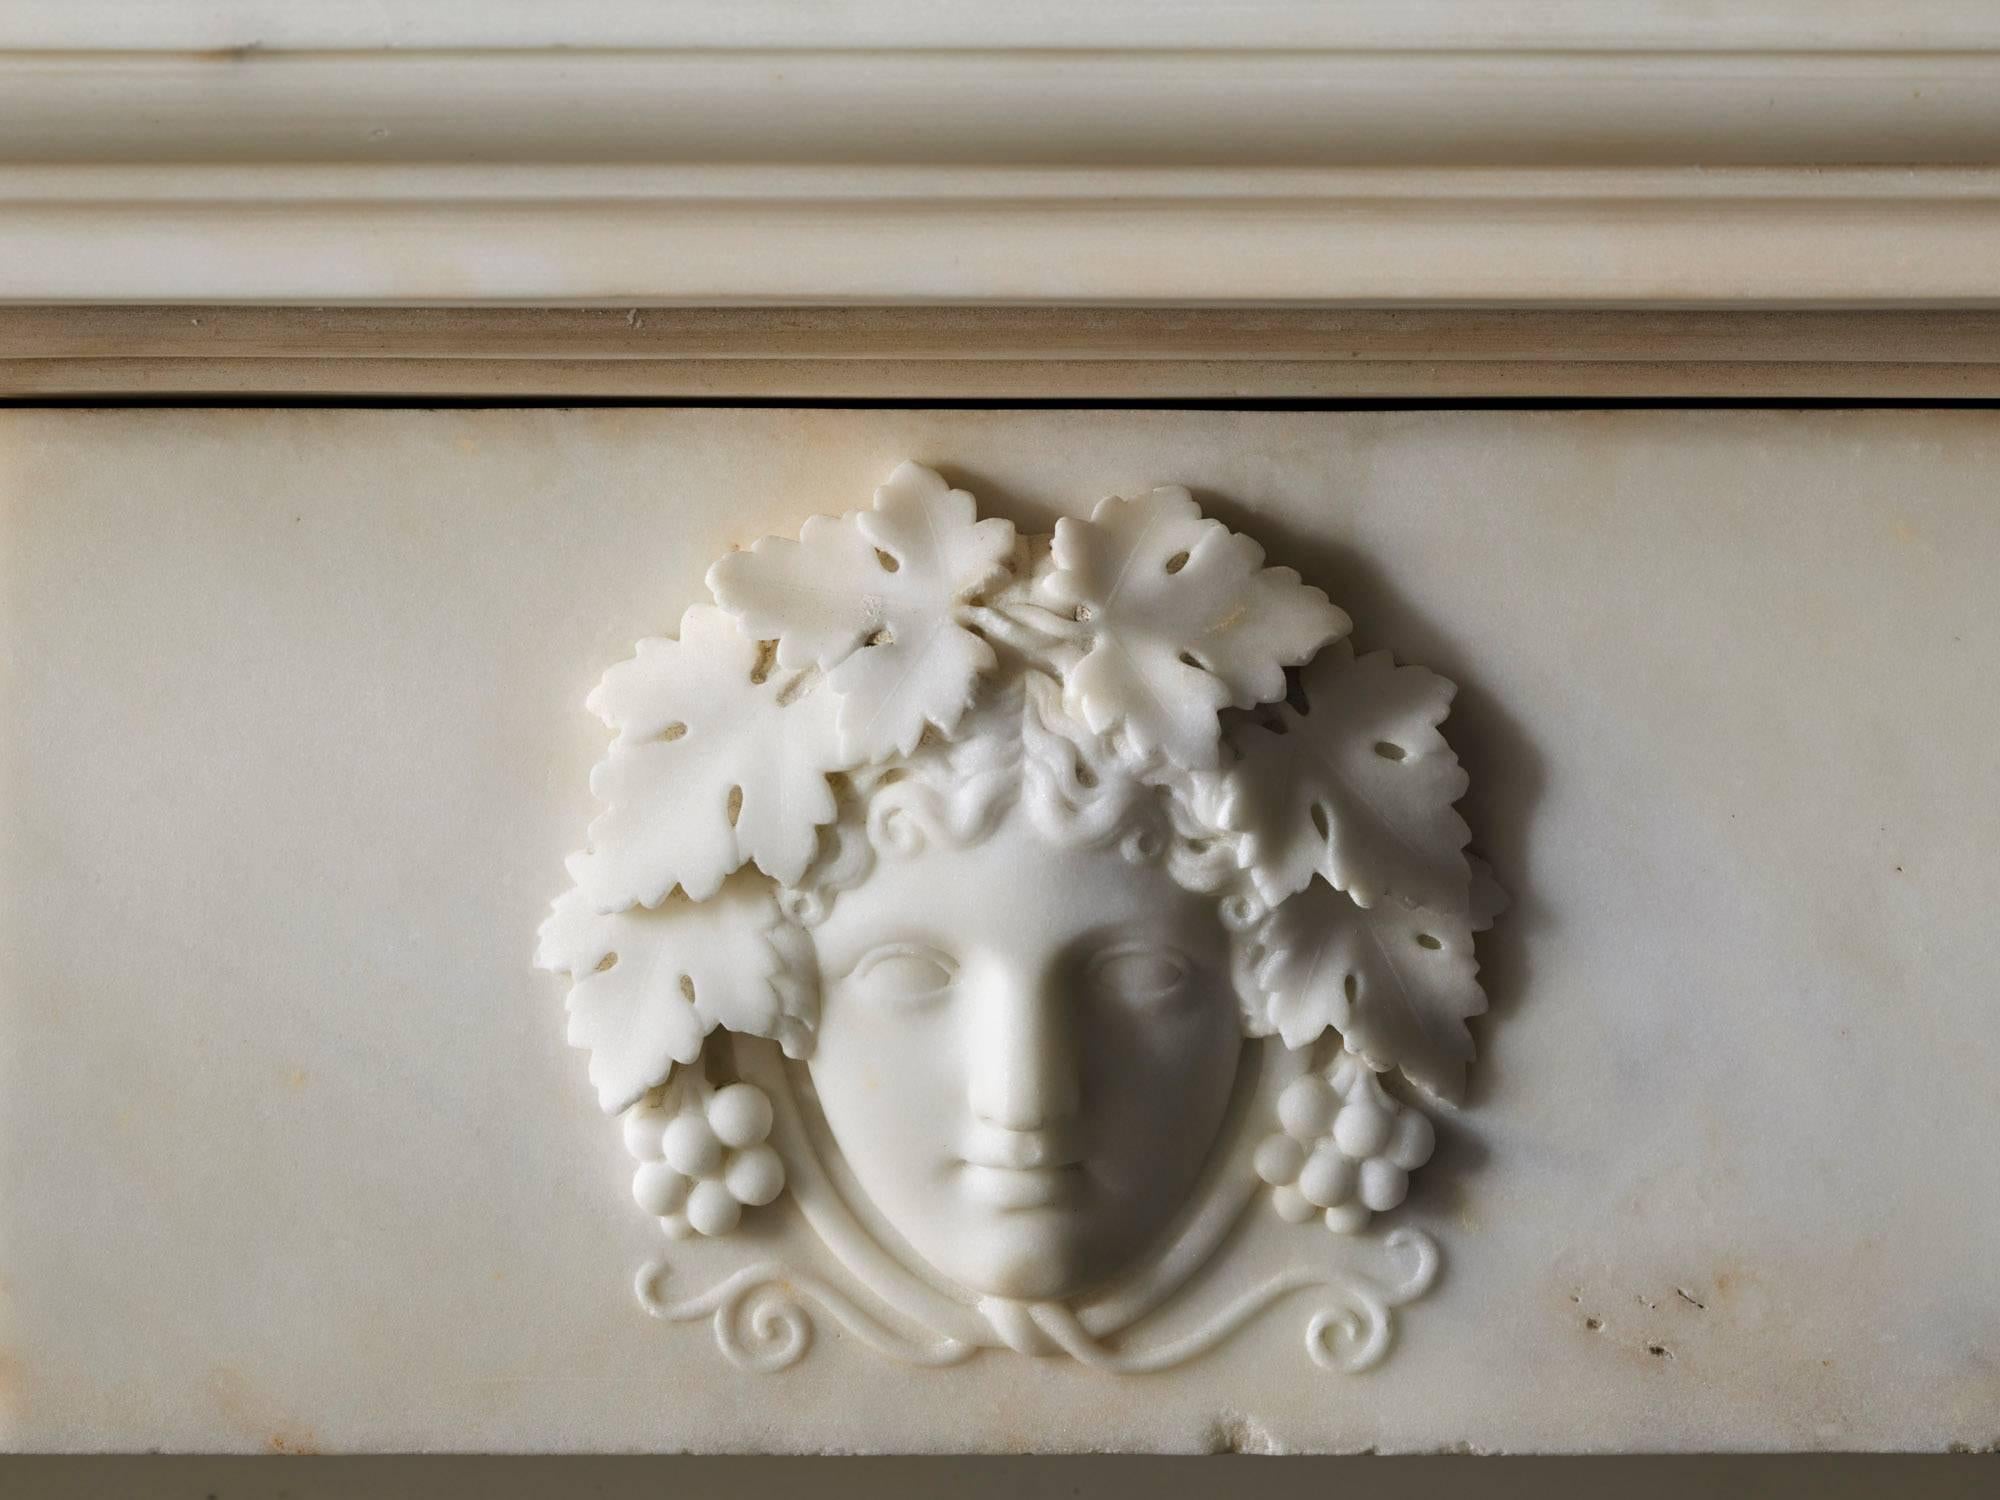 Une exceptionnelle cheminée ancienne de style Régence anglaise, vers 1820. Sculpté dans un beau marbre blanc de statuaire, avec des colonnes cannelées et des chapiteaux corinthiens. La frise est sculptée de bossages floraux ovoïdes de part et